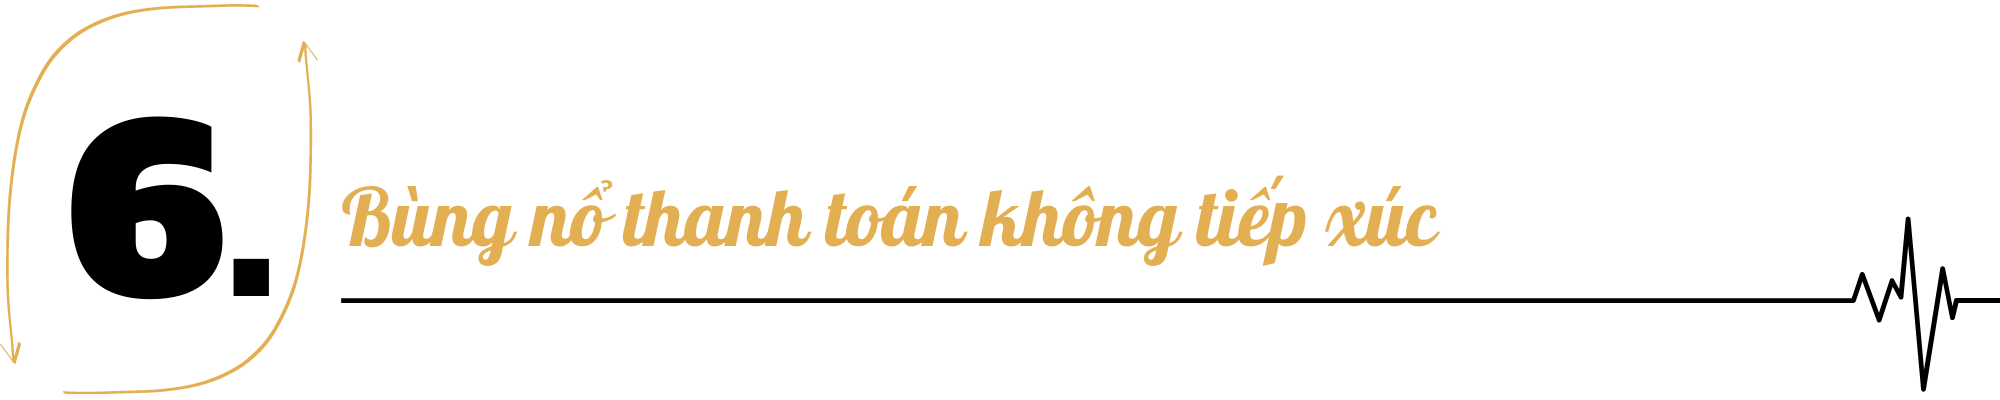 TOP 10 sự kiện nổi bật của ngành ngân hàng Việt Nam năm 2020  - Ảnh 7.